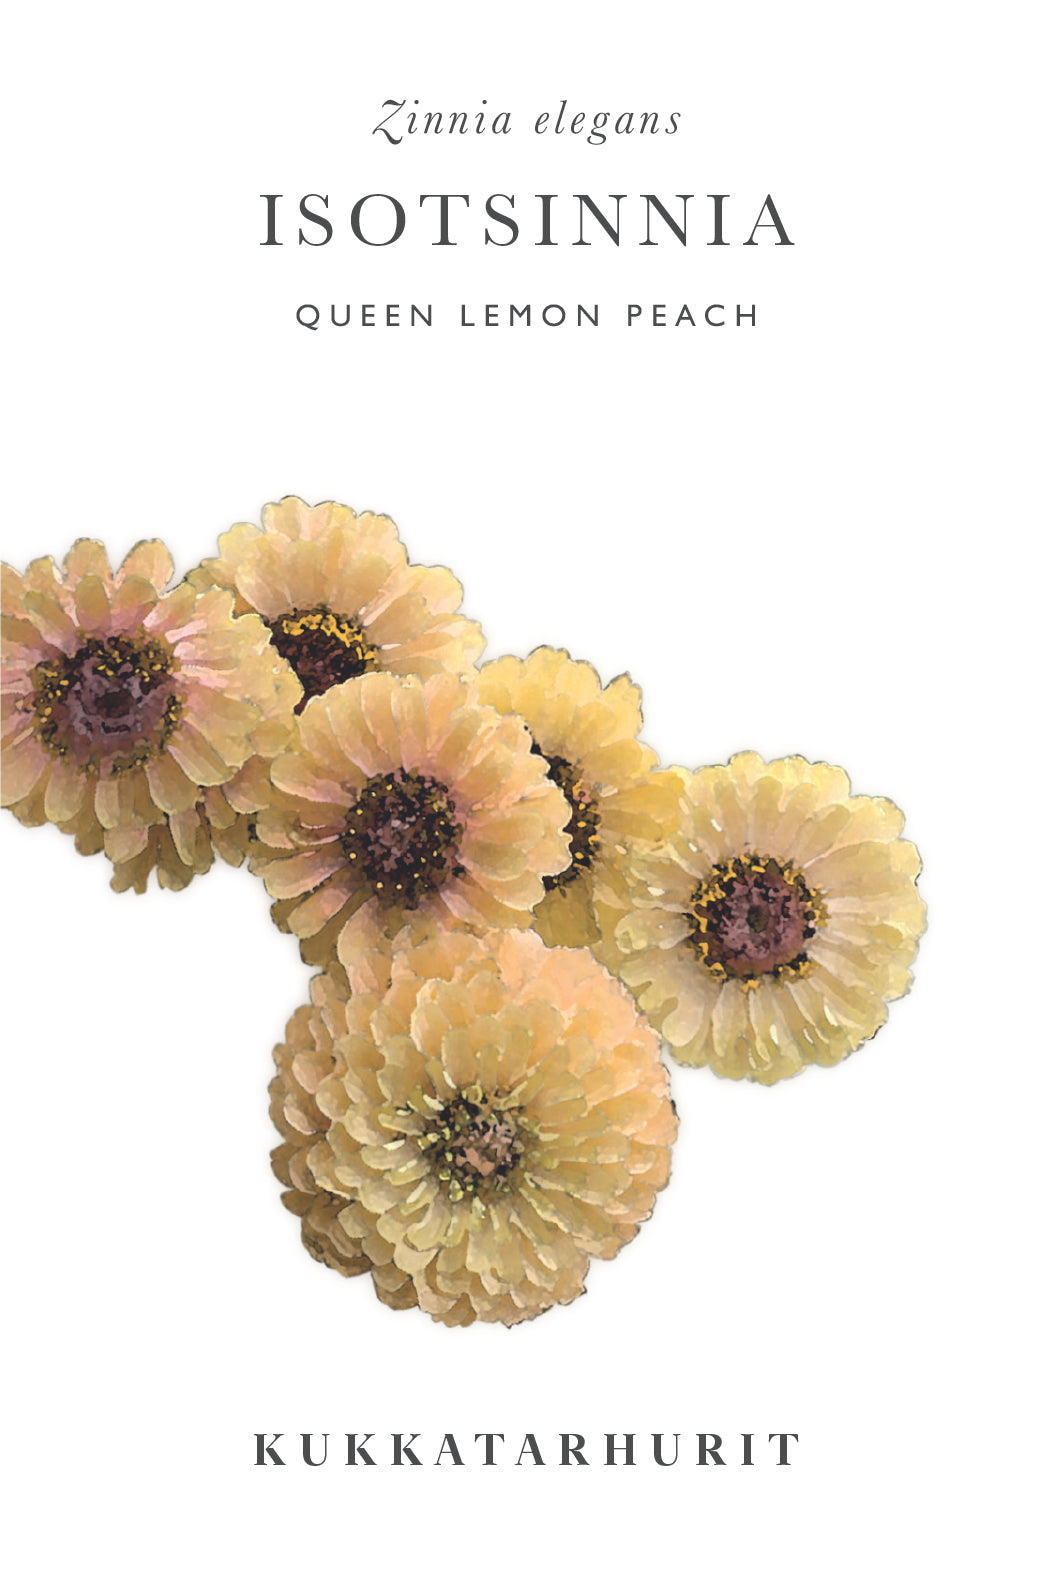 Isotsinnia Queen Lemon Peach